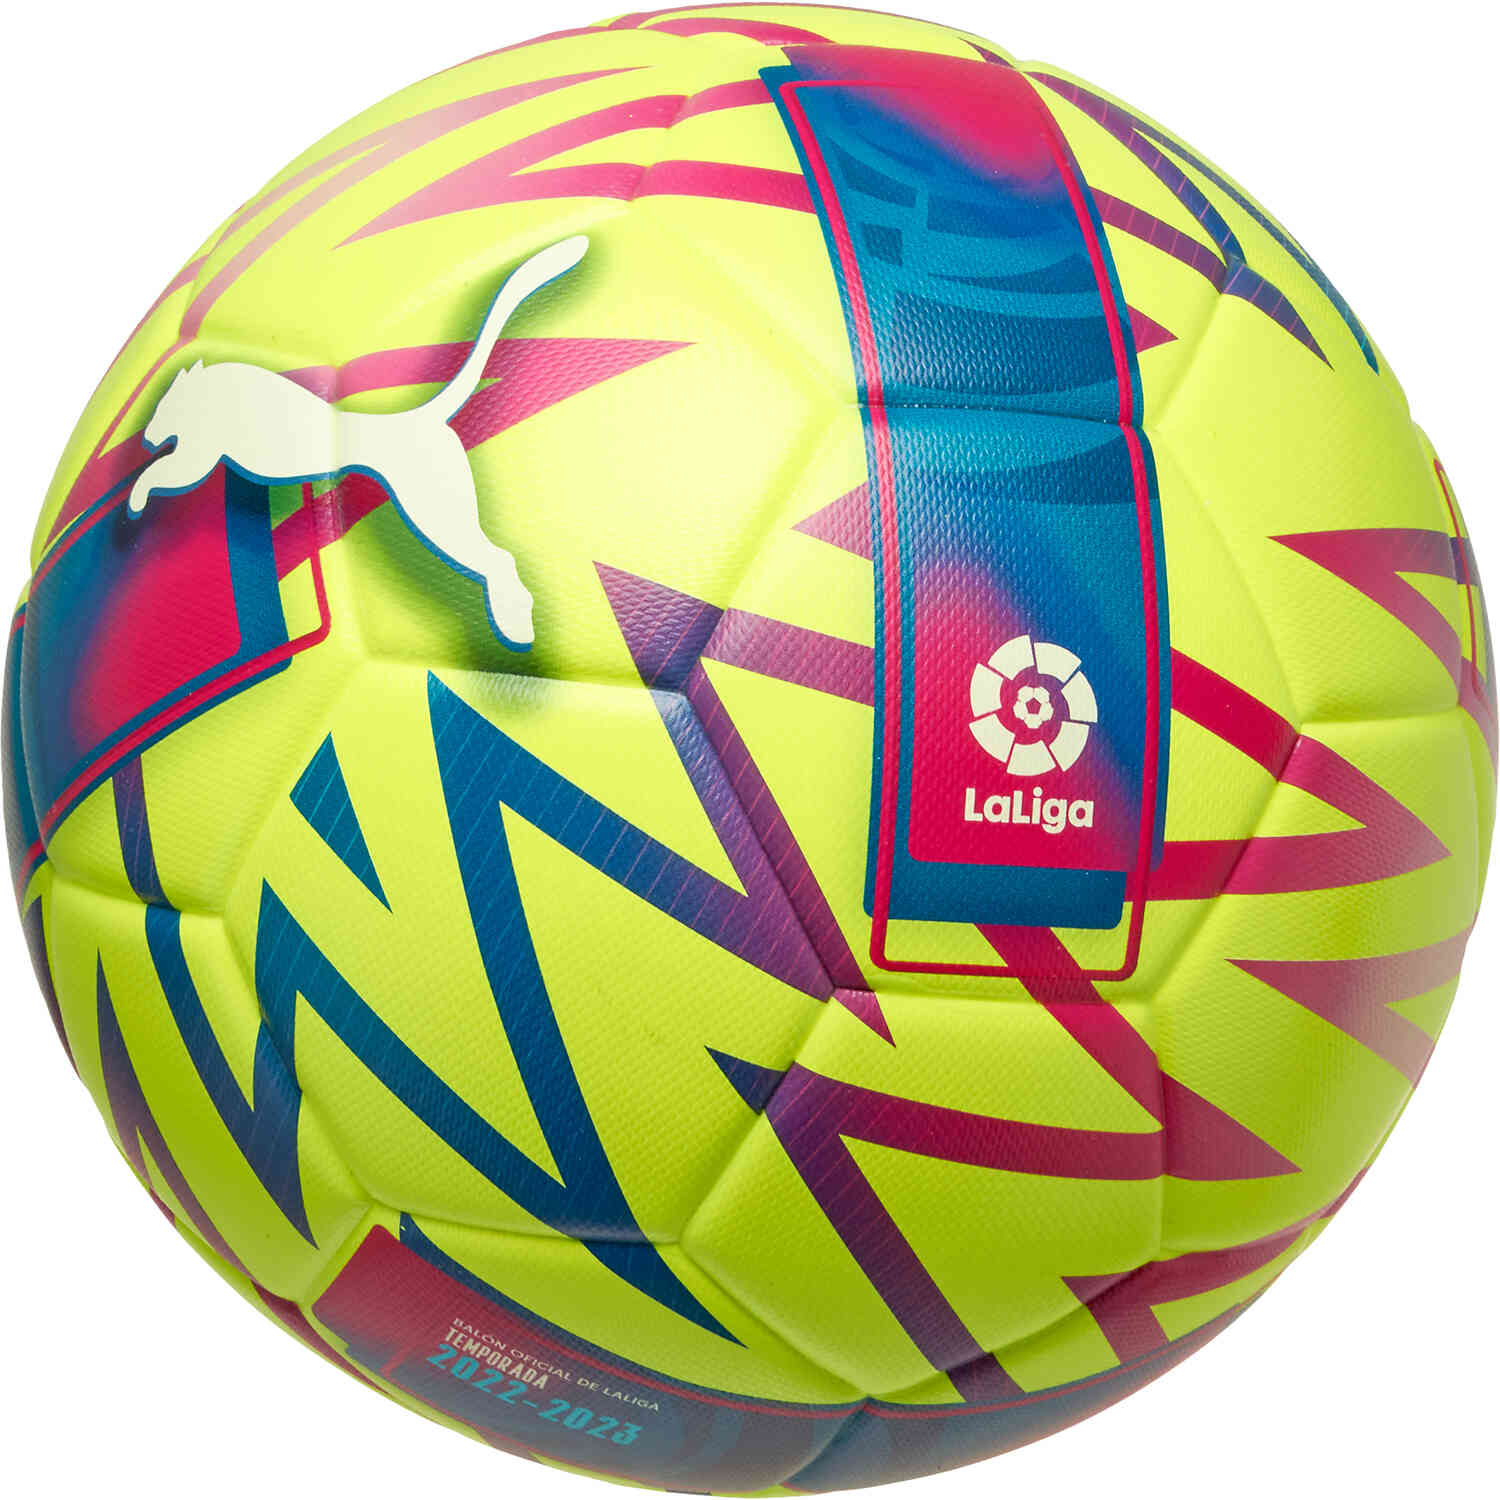 PUMA La Liga Orbita 1 Soccer Ball 2022/23 SoccerPro